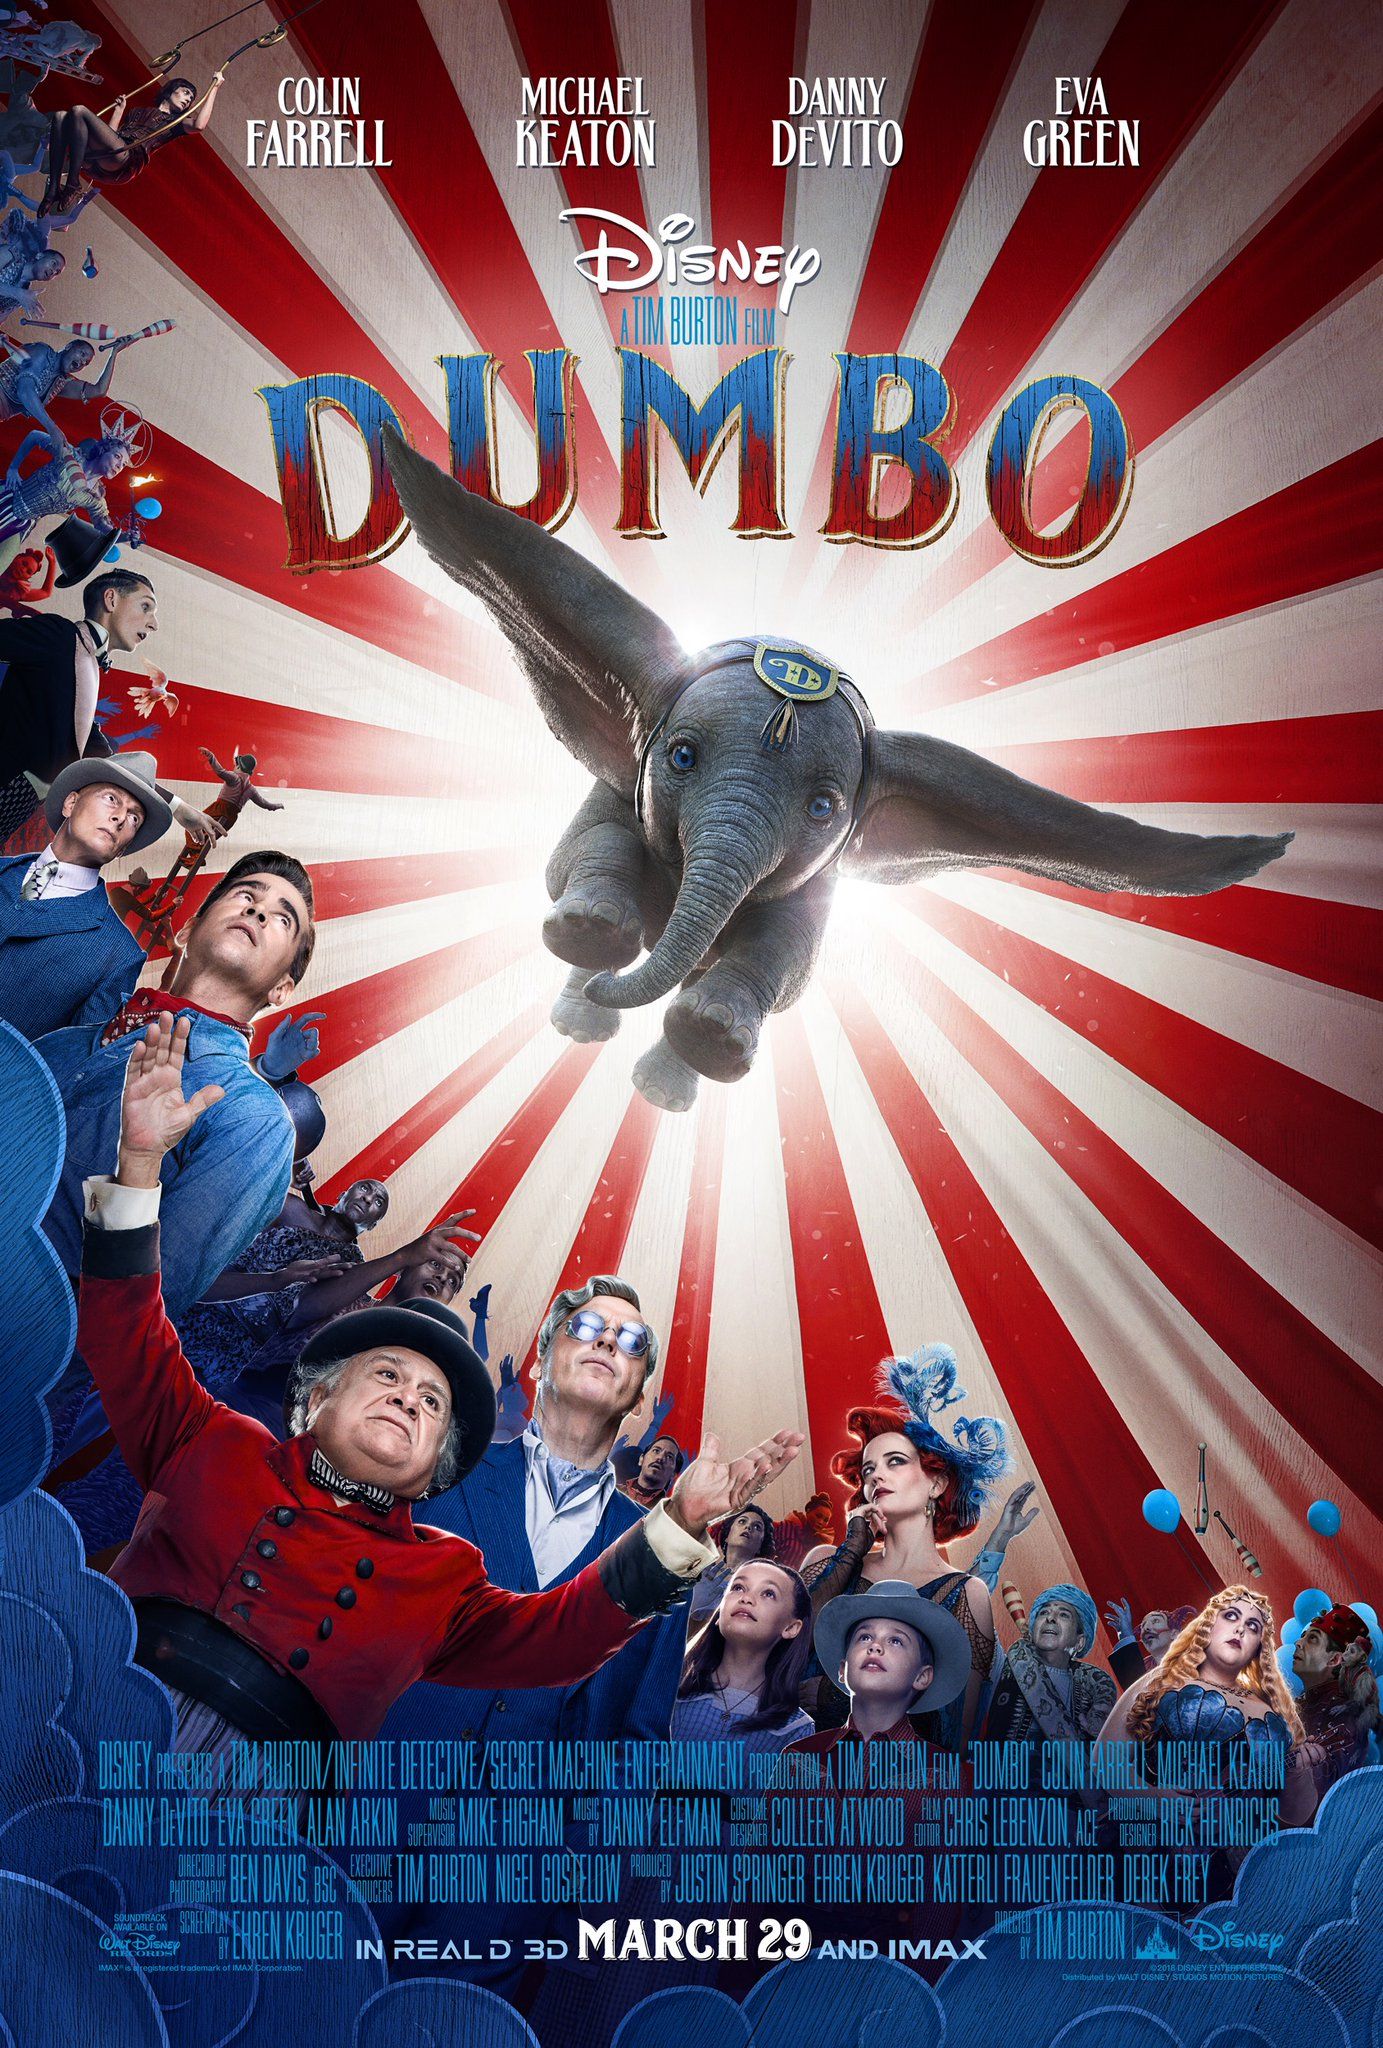 Dumbo remake poster 2019